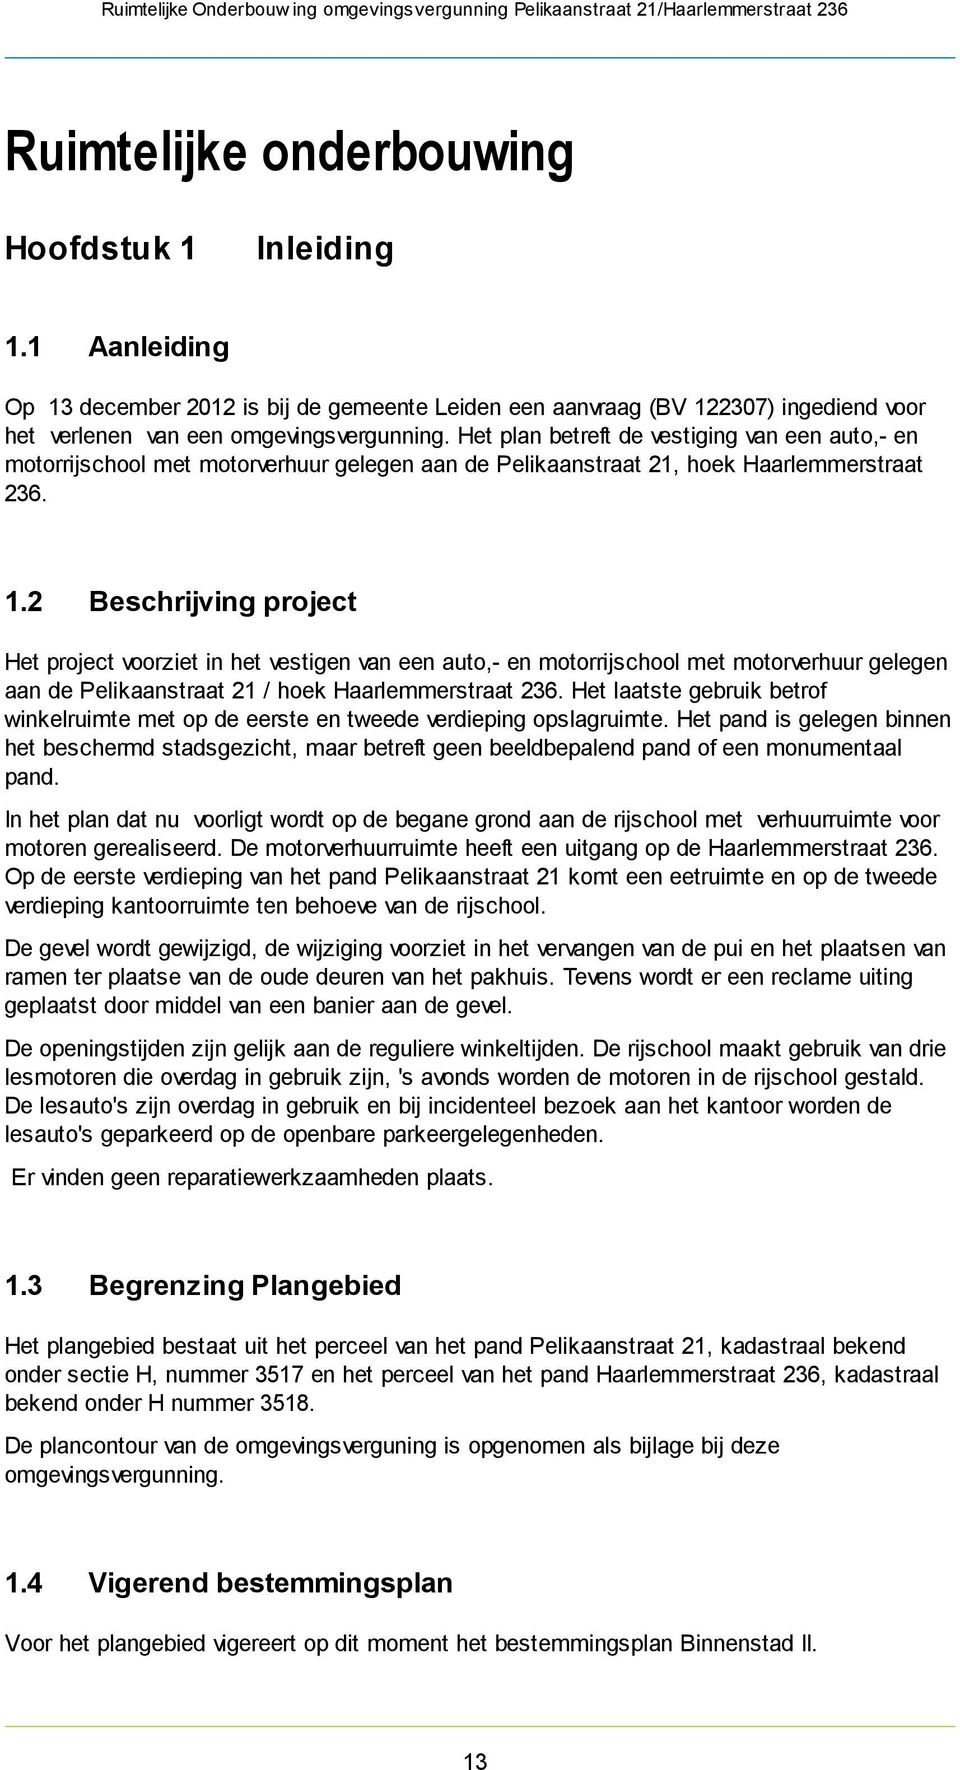 2 Beschrijving project Het project voorziet in het vestigen van een auto,- en motorrijschool met motorverhuur gelegen aan de Pelikaanstraat 21 / hoek Haarlemmerstraat 236.